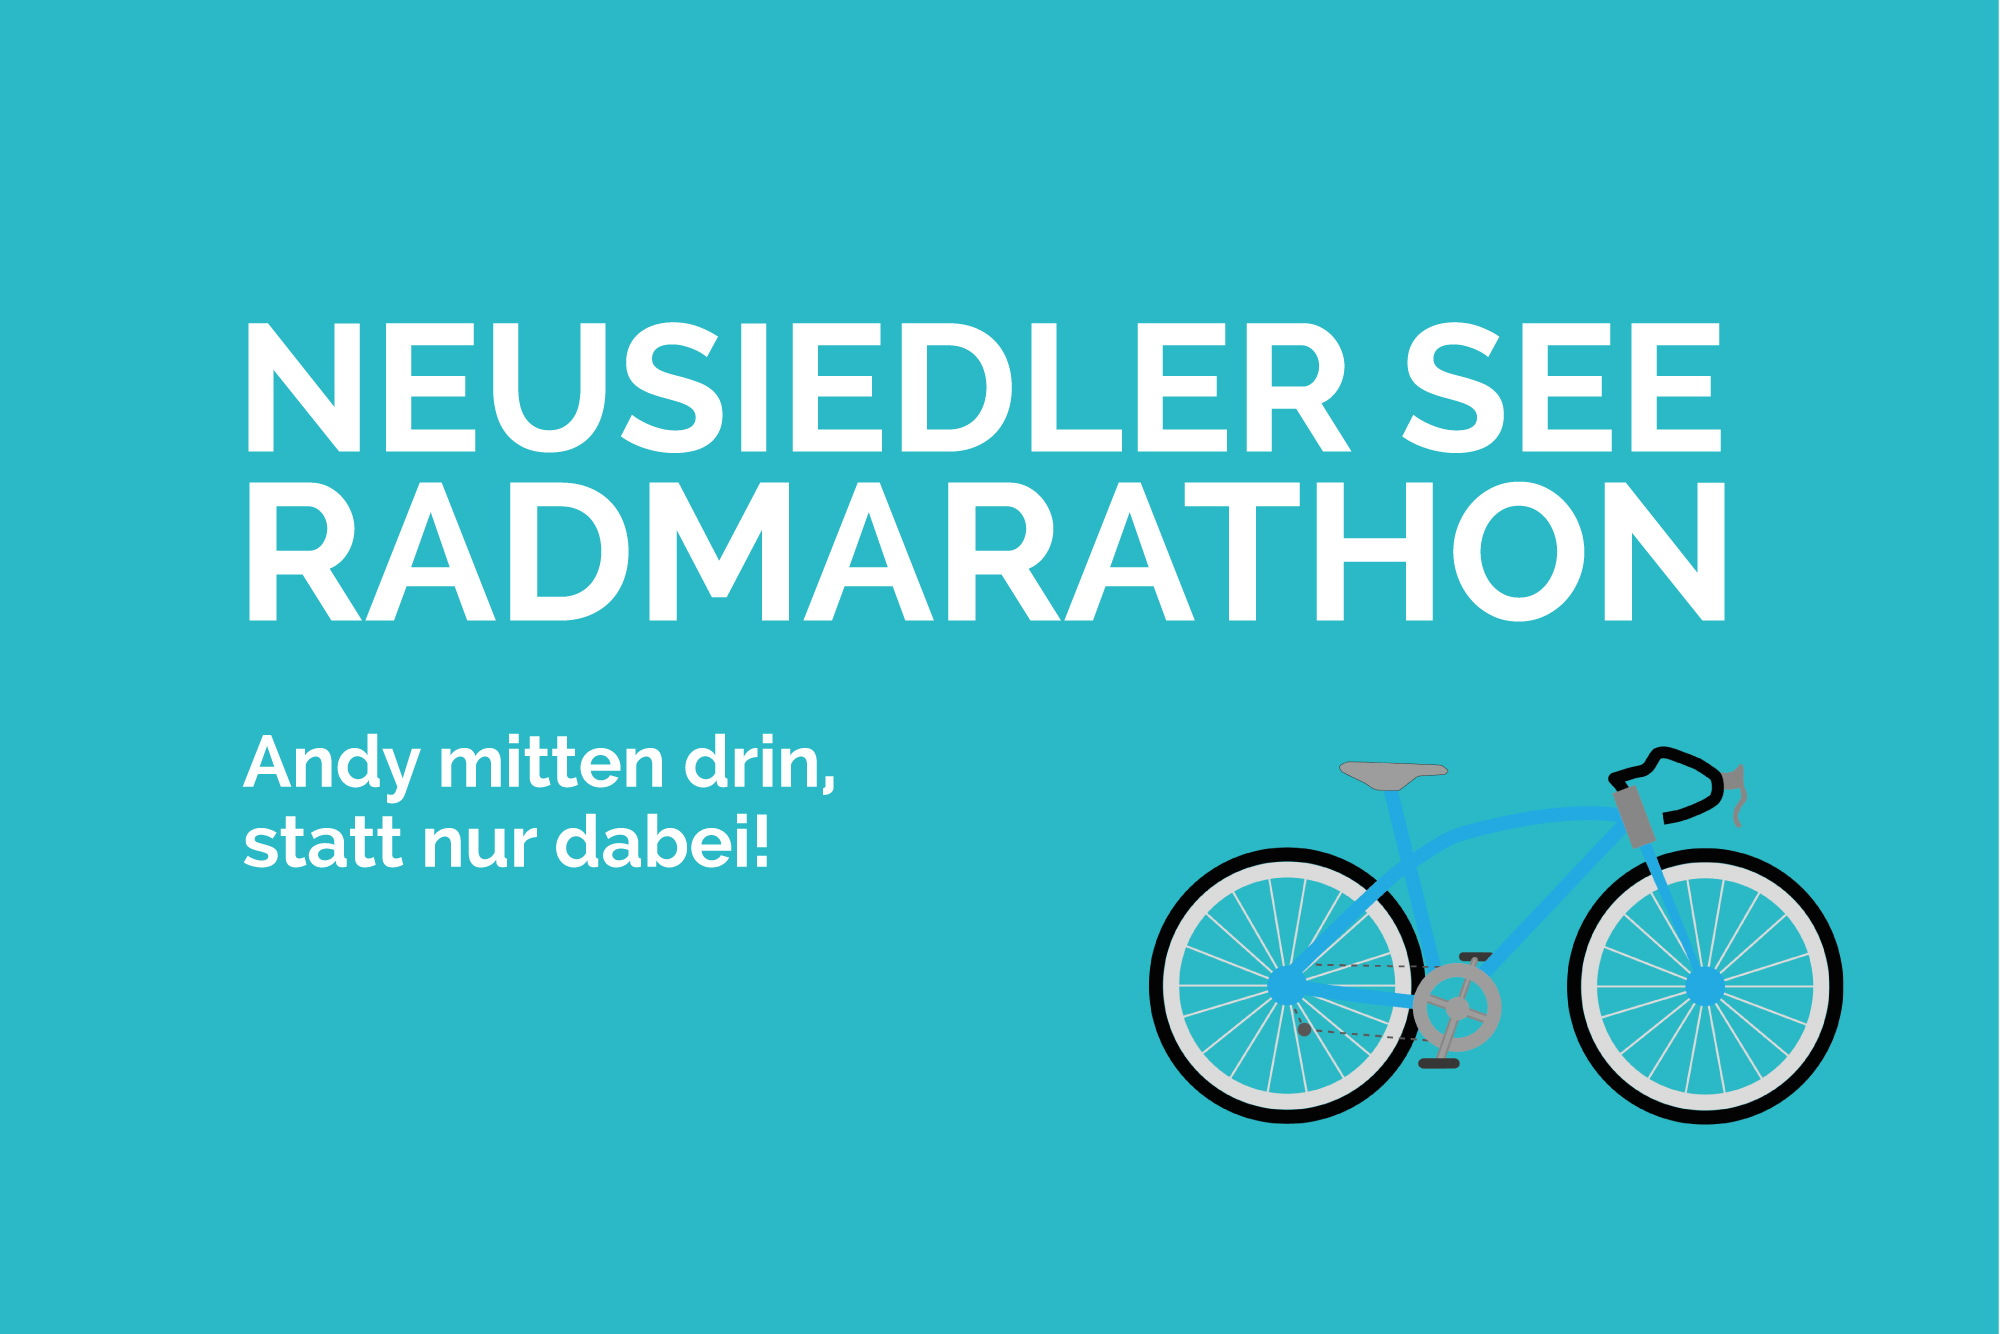 Neusiedler See Radmarathon, Radmarathon, Rennradblog, Geradeaus, Geradeausat, Andy, Blog, Mörbisch, Rust, Neusiedl, Radfahren, Radmarathon, RC Hohe Wand,